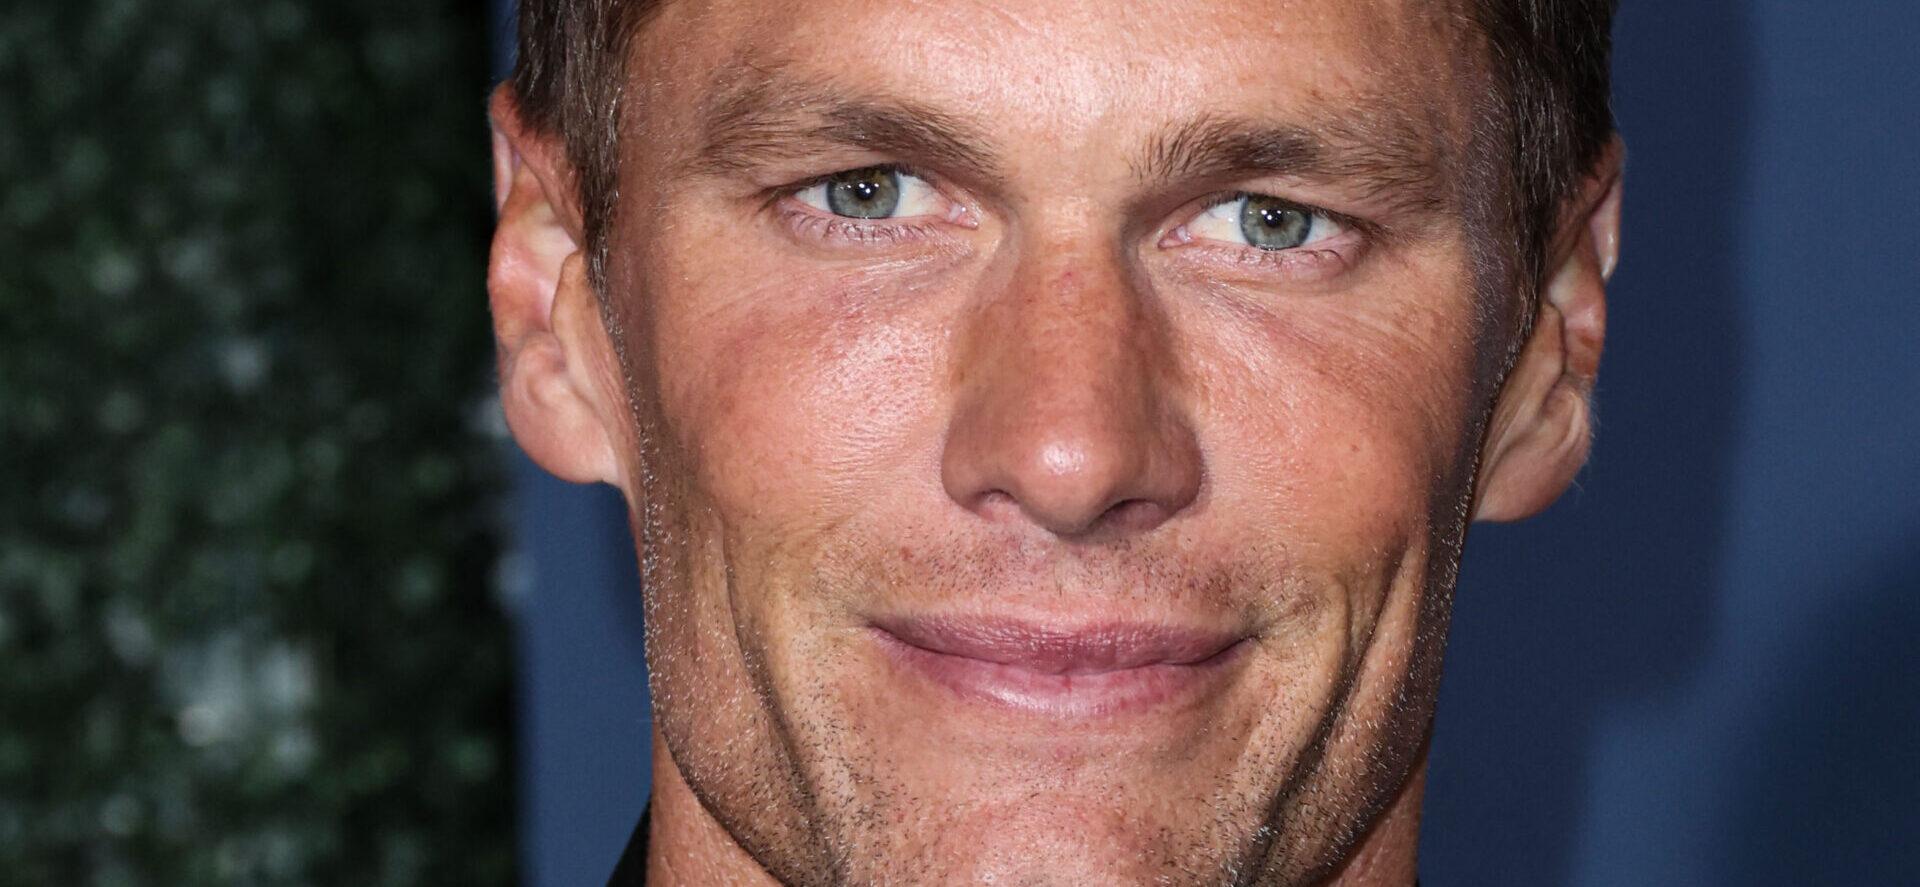 Tom Brady close up